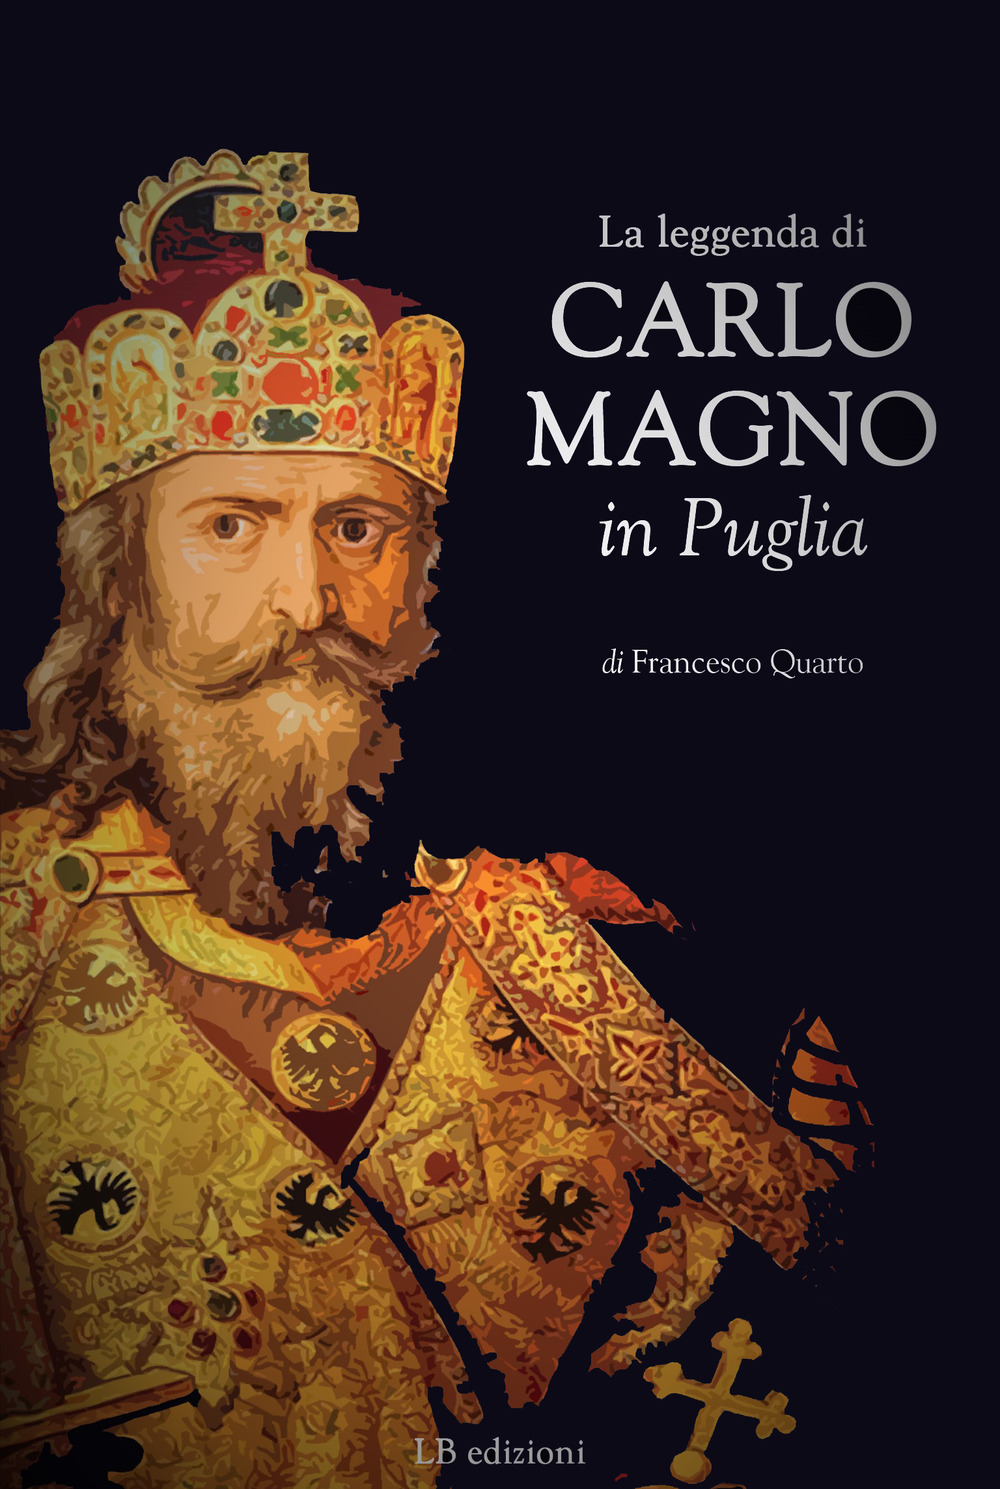 La leggenda di Carlo Magno in Puglia